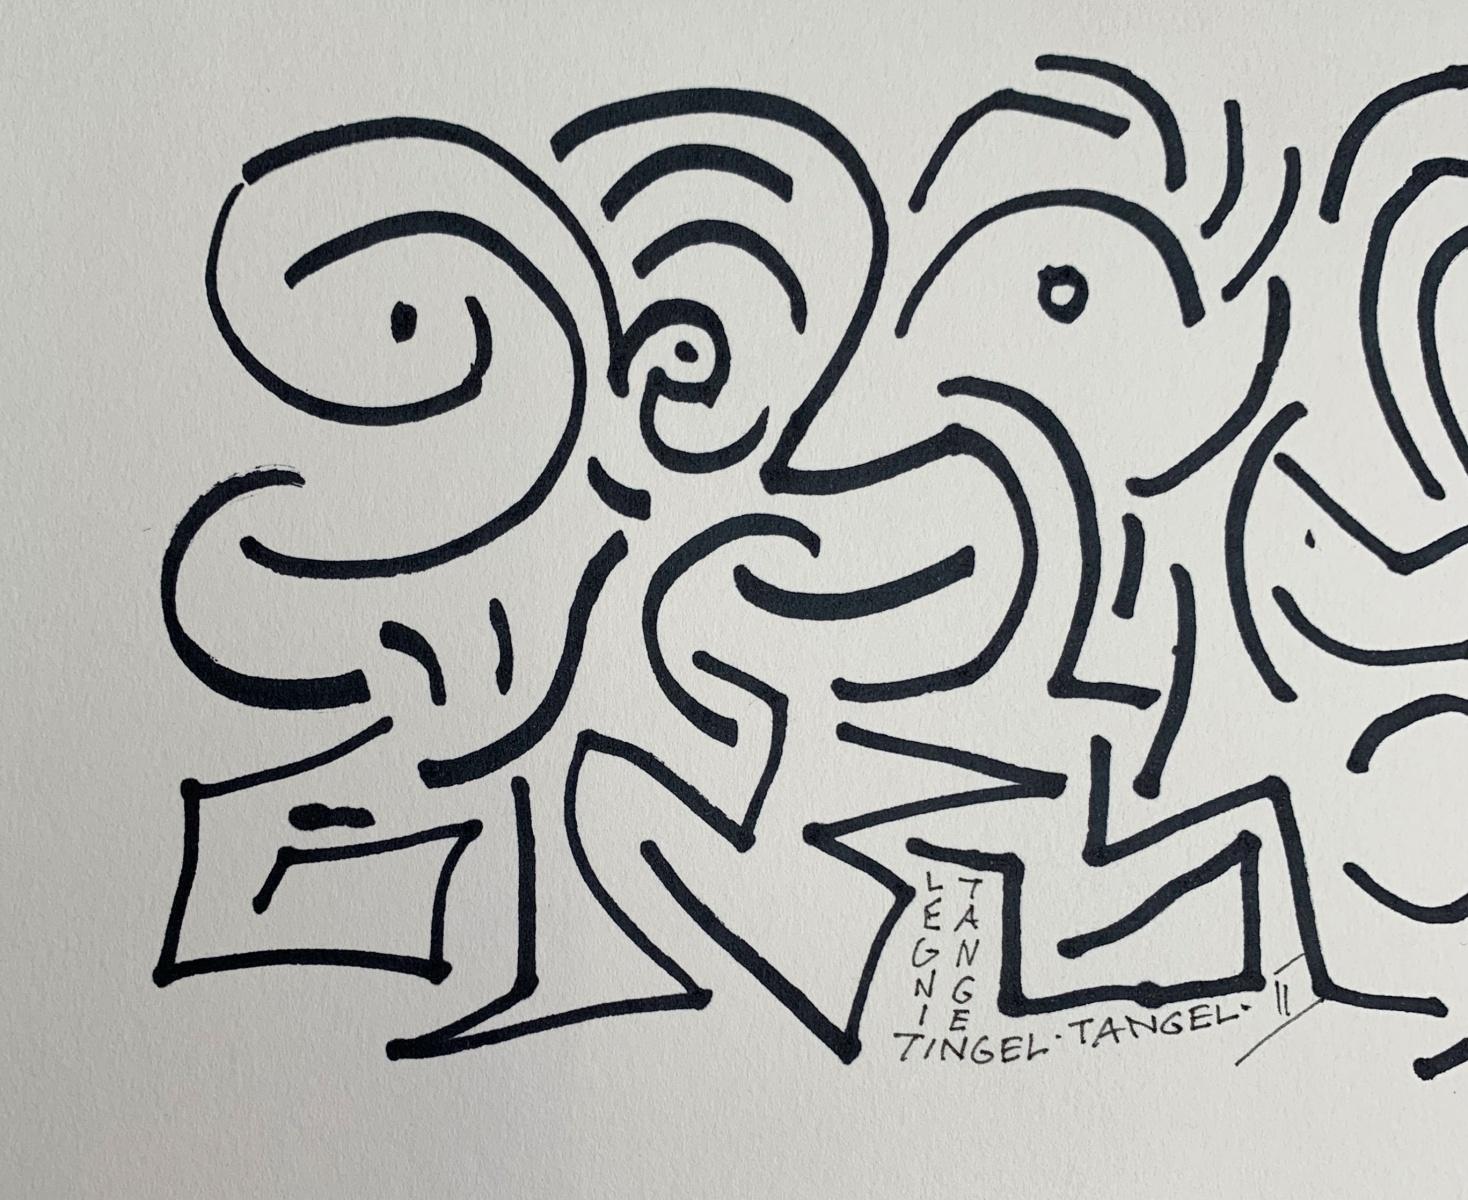 Tingel-Tangel II - XXI Jahrhundert, Tuschezeichnung, Abstraktion, Schwarz-Weiß (Beige), Abstract Drawing, von Leszek Rózga